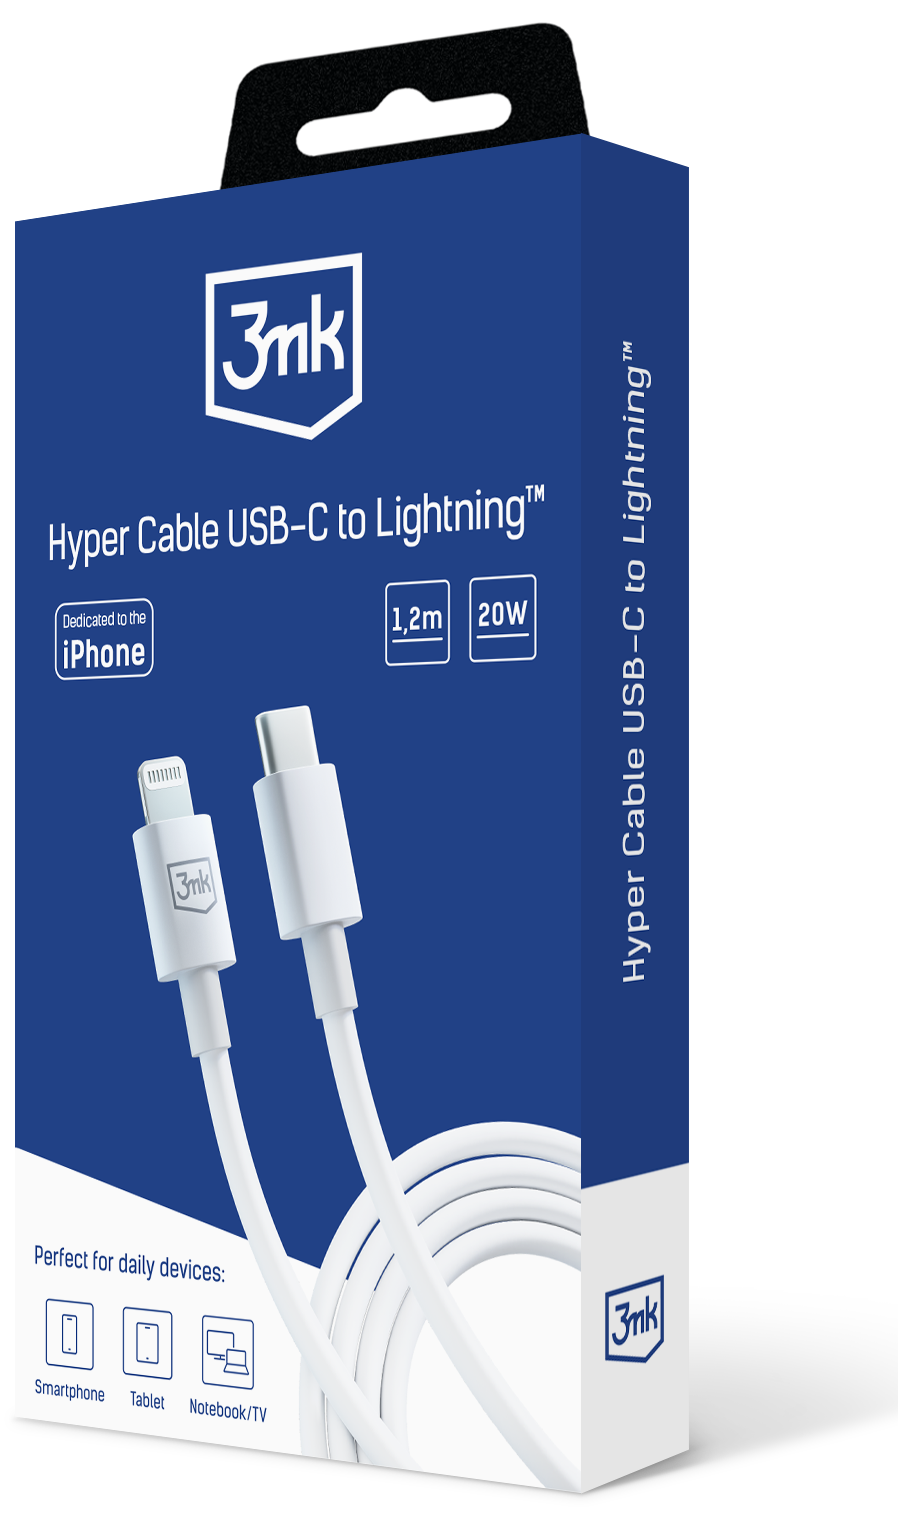 3mk-hyper-cable-C-to-Lightning_white-packshot-b